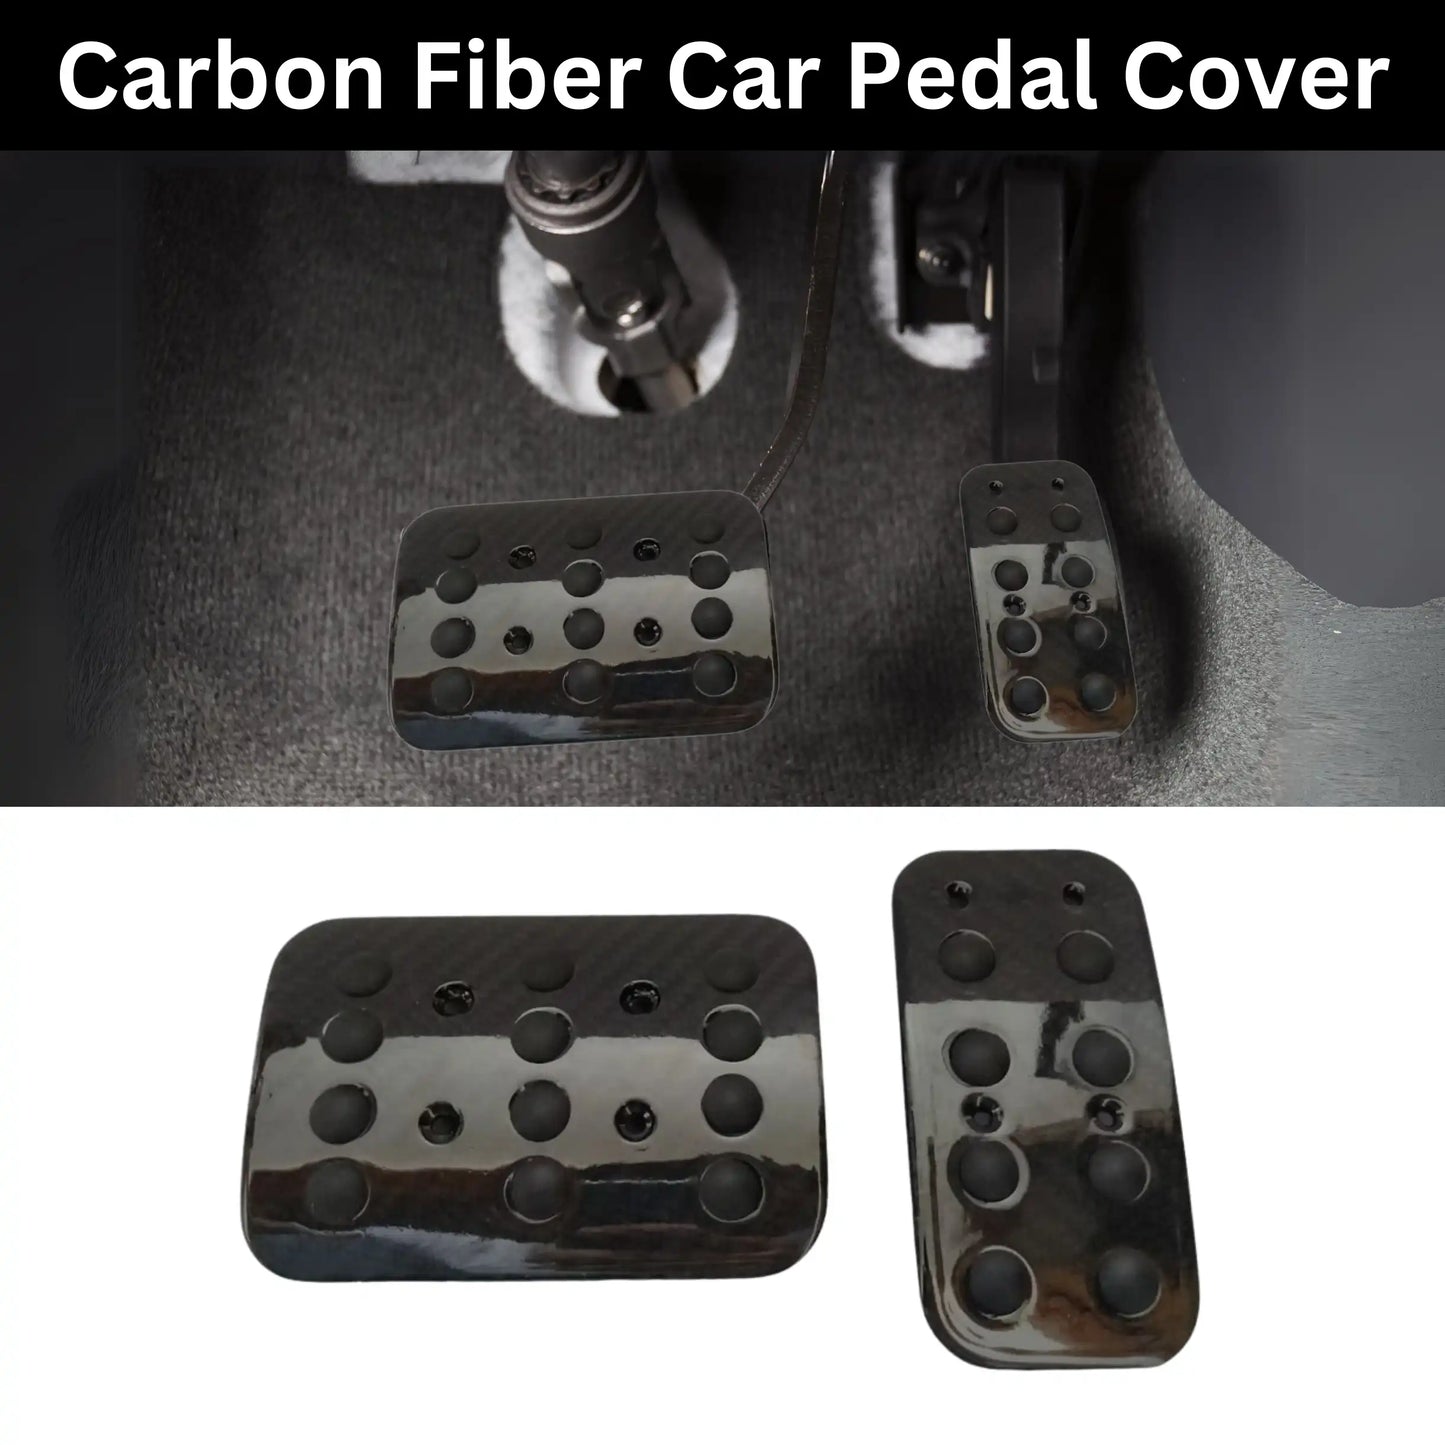 Unversal  Carbon Fiber Car Pedal Cover